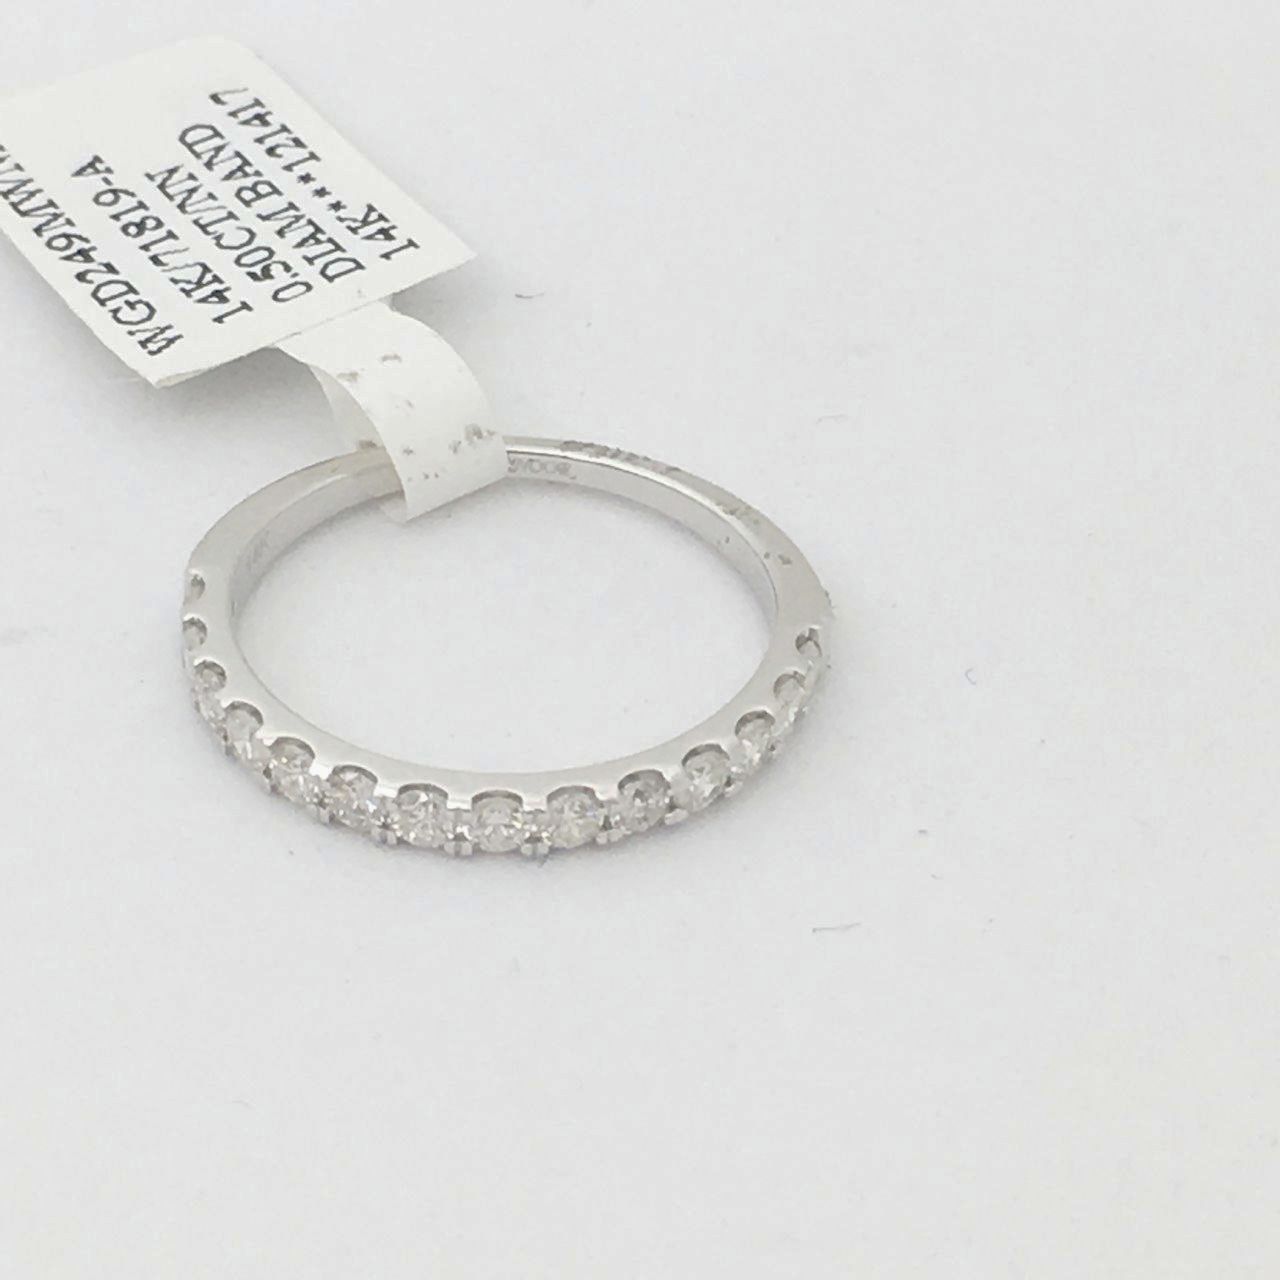 14K White Gold & Genuine Diamond Ring $1245 NWT Size 7